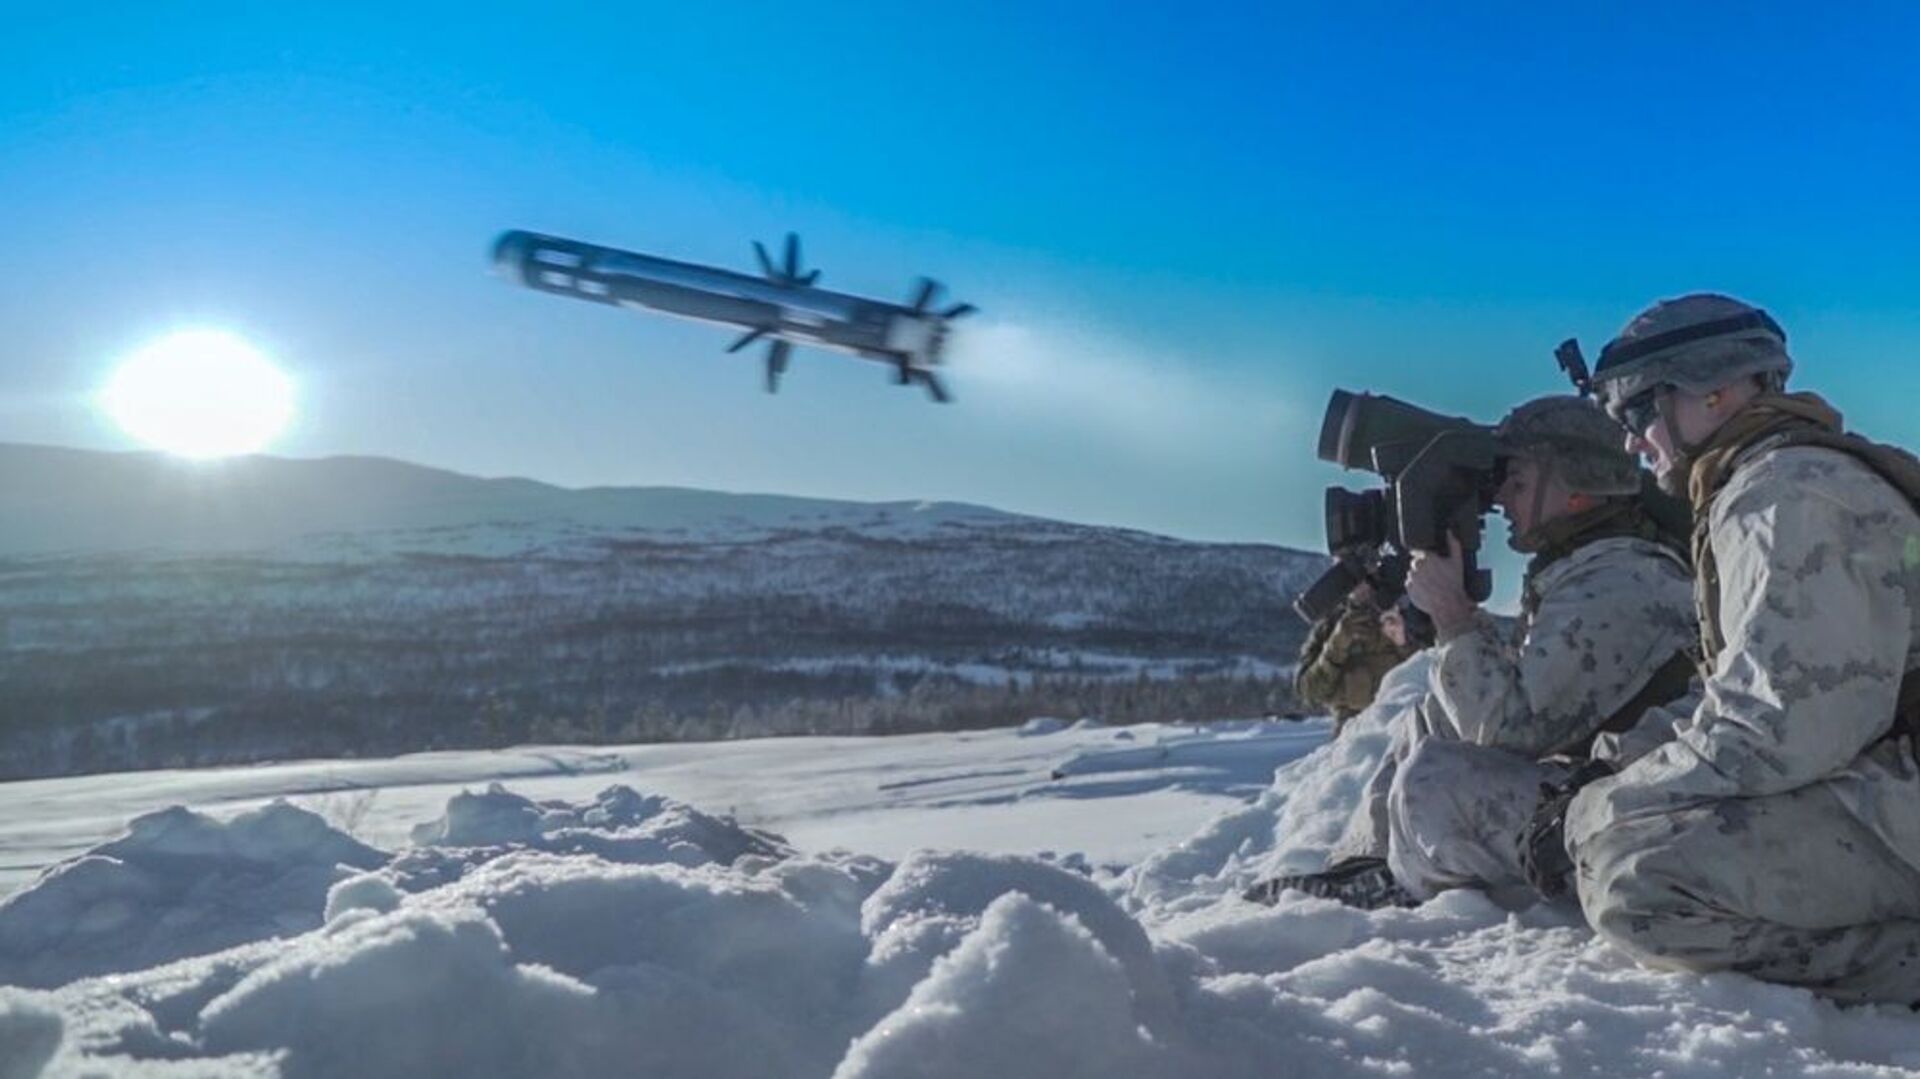 Американский военнослужащий производит выстрел из противотанкового ракетного комплекса (ПТРК) Javelin во время учений Cold Response 2020 в Норвегии - Sputnik Lietuva, 1920, 12.05.2021